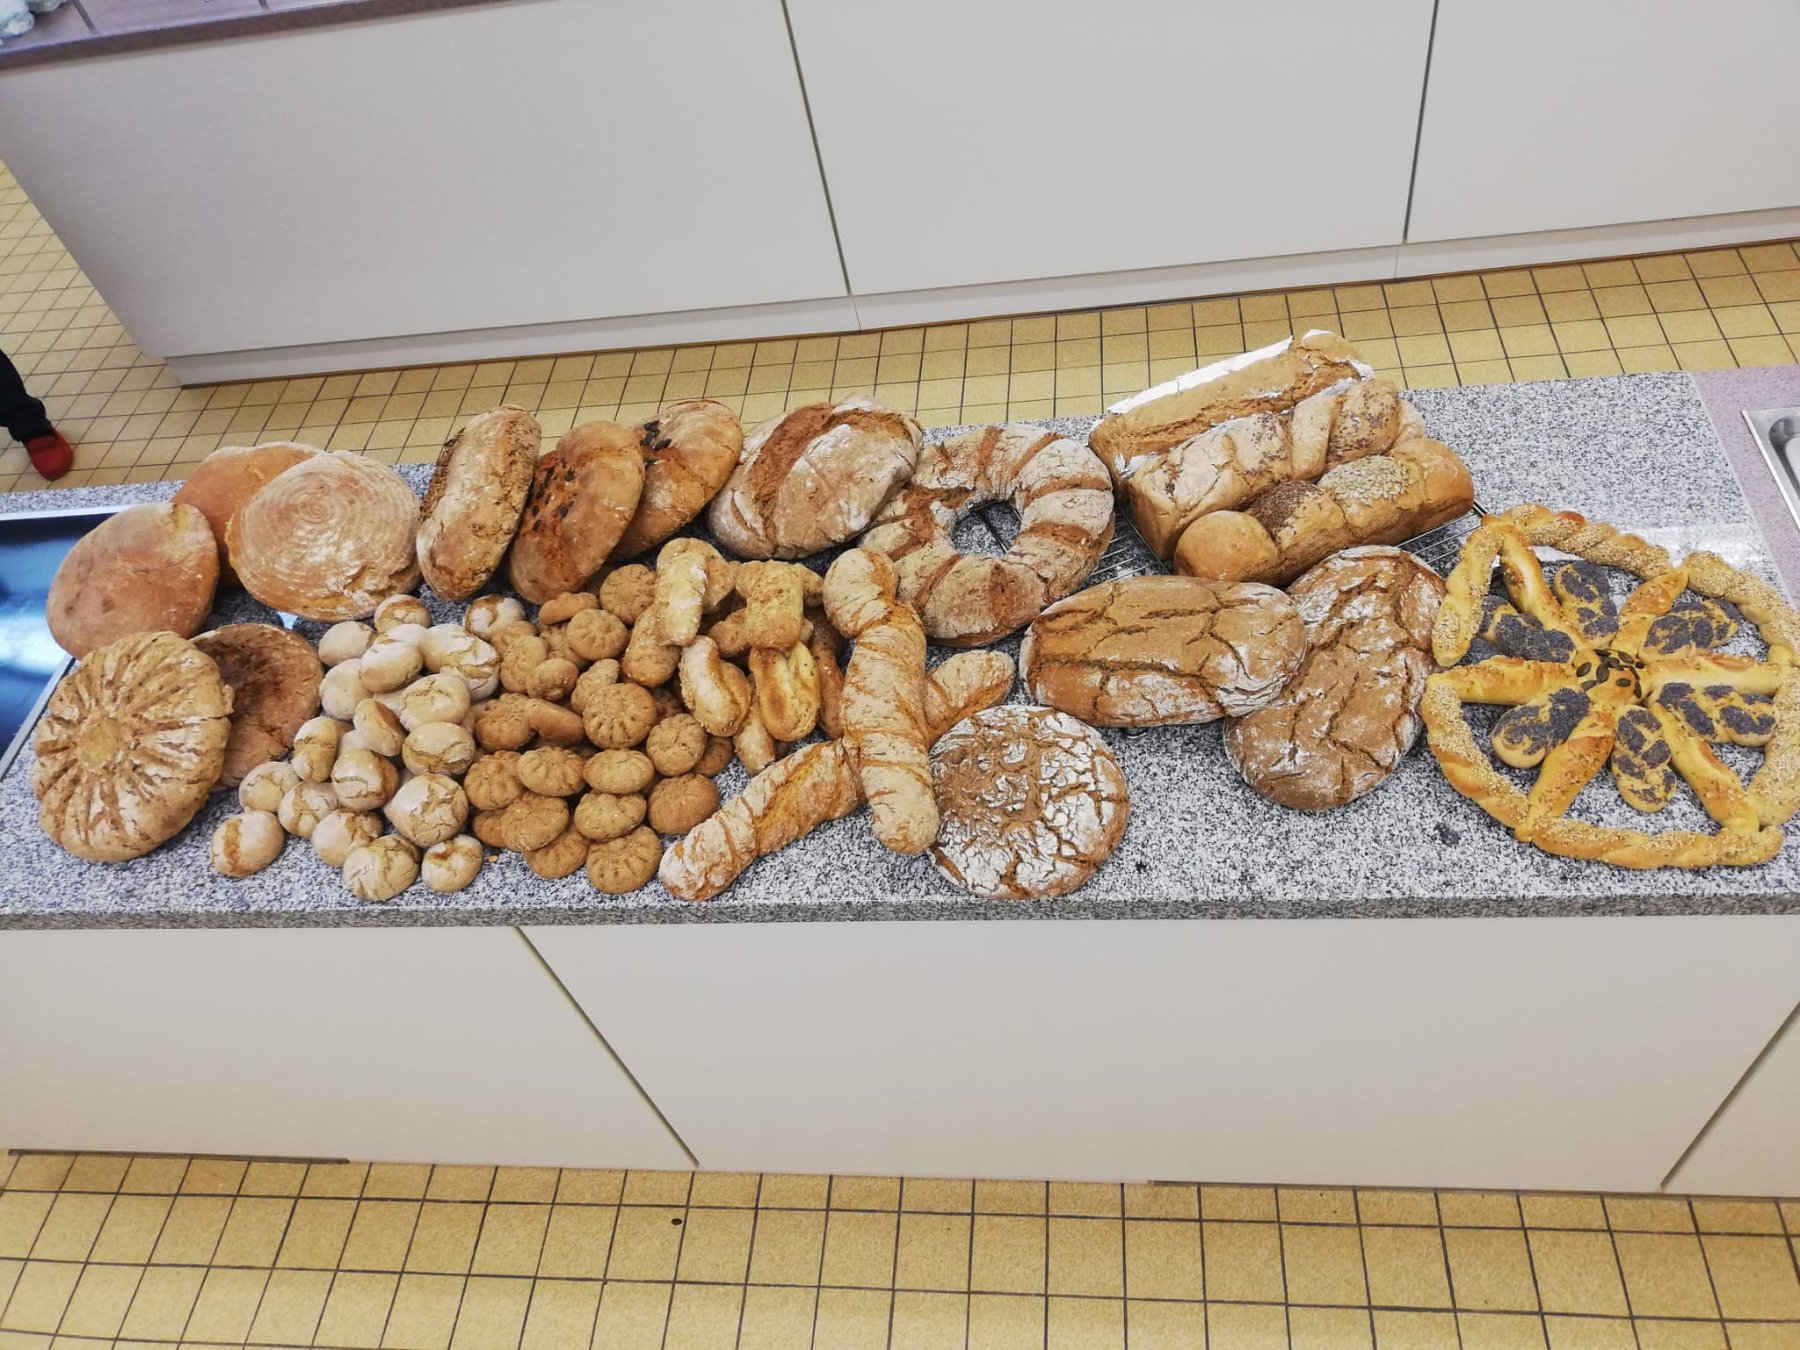 verschiedene Brot- und Gebäcksorten selbst gebacken liegen auf einem Tisch